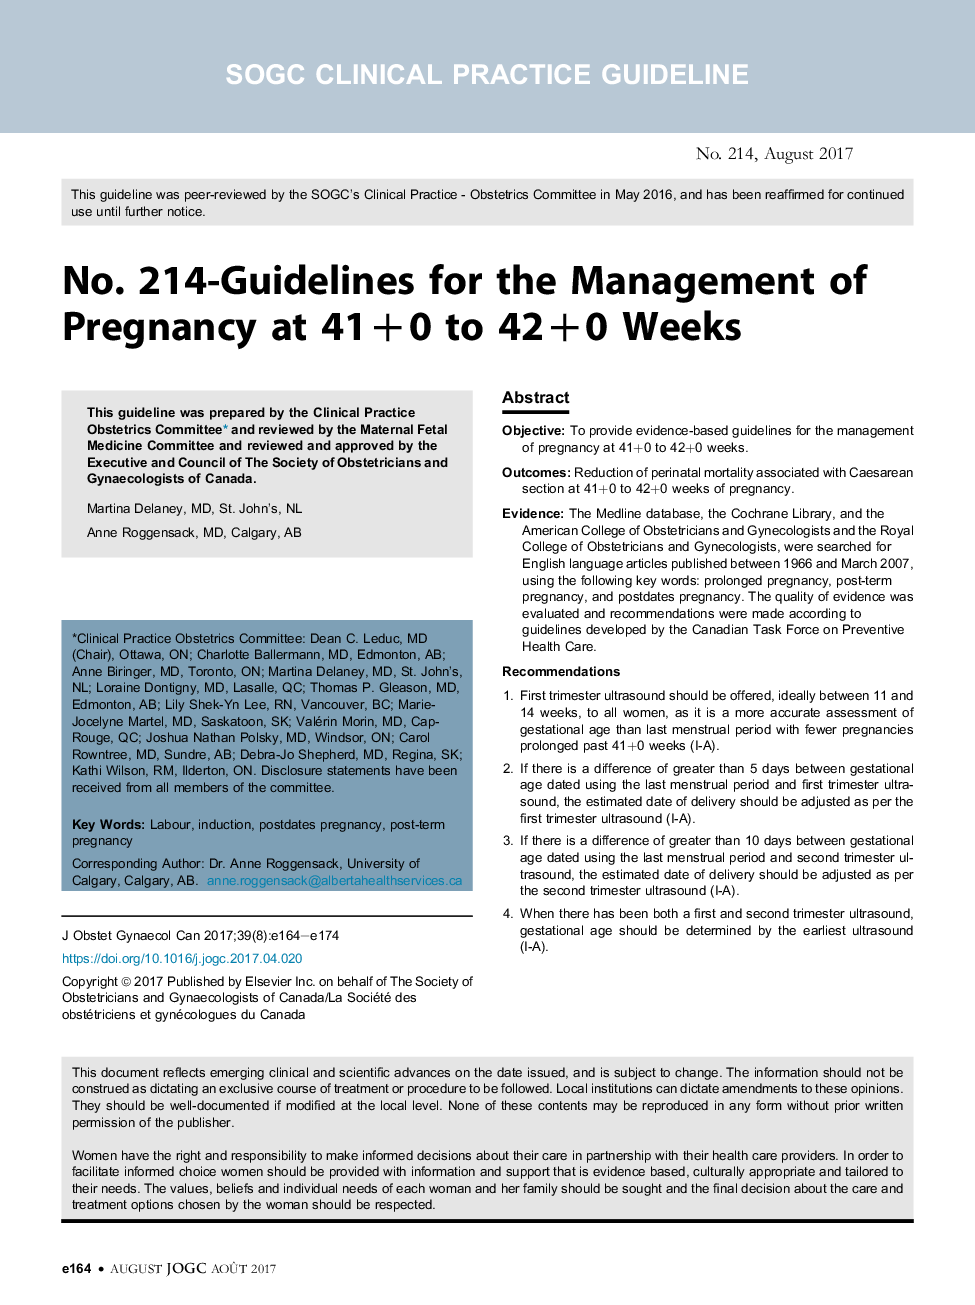 شماره 214-دستورالعمل های مدیریت بارداری در 41 + 0 تا 42 + 0 هفته 